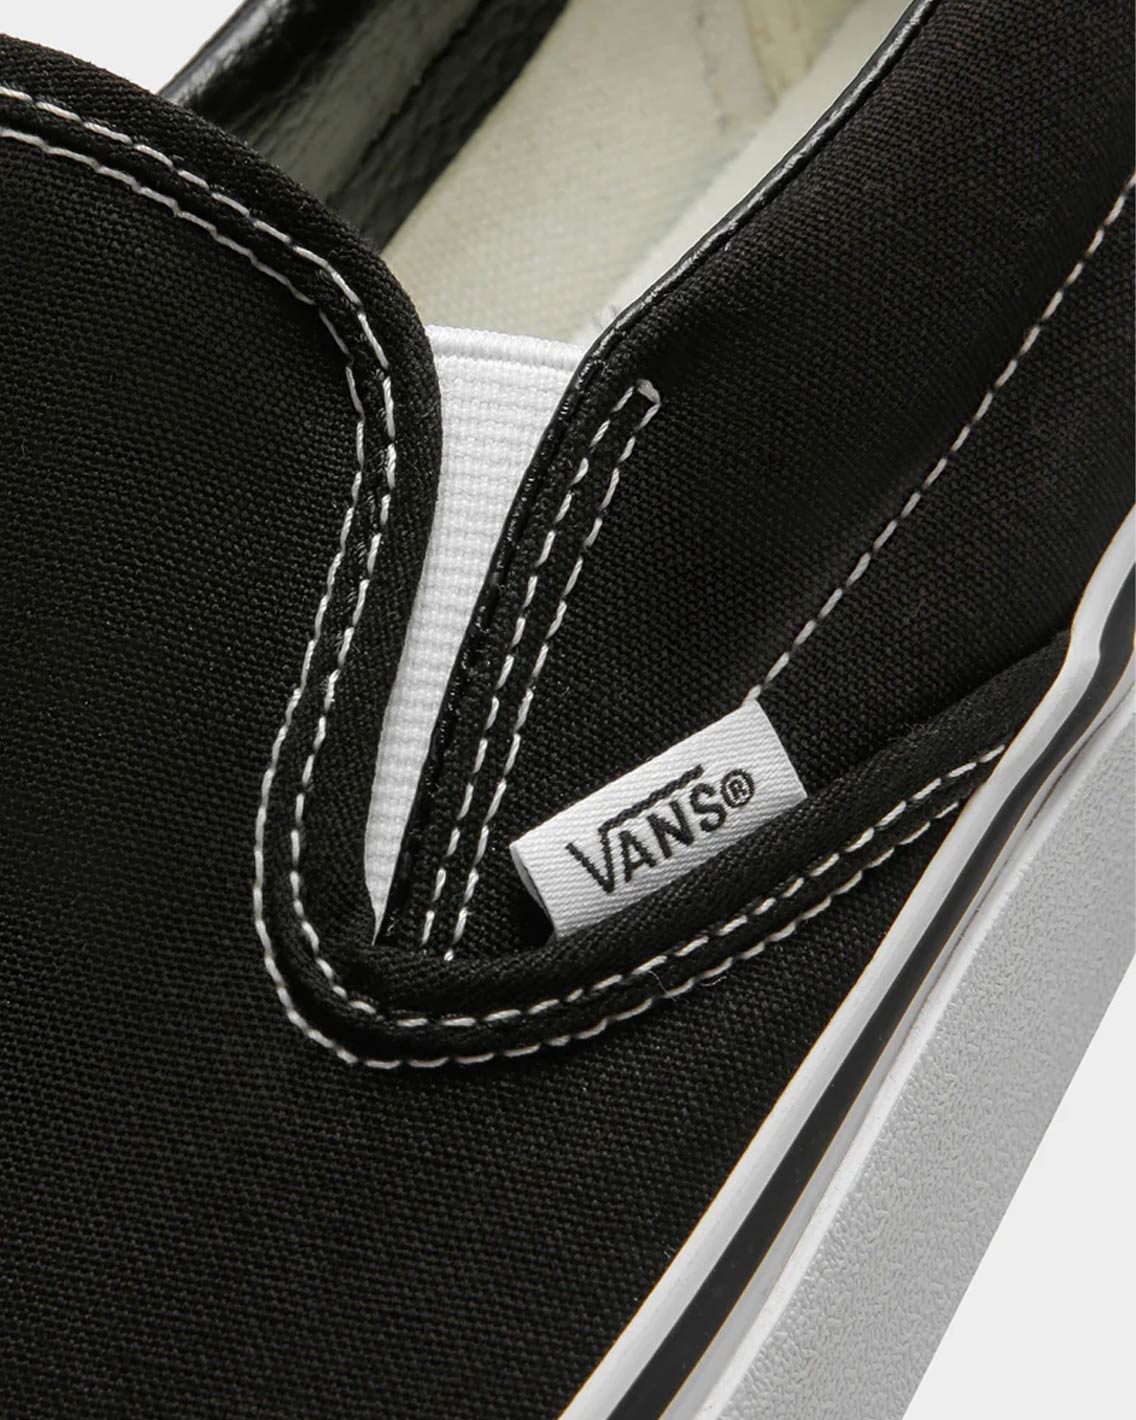 Vans - Classic Slip On - Black / White